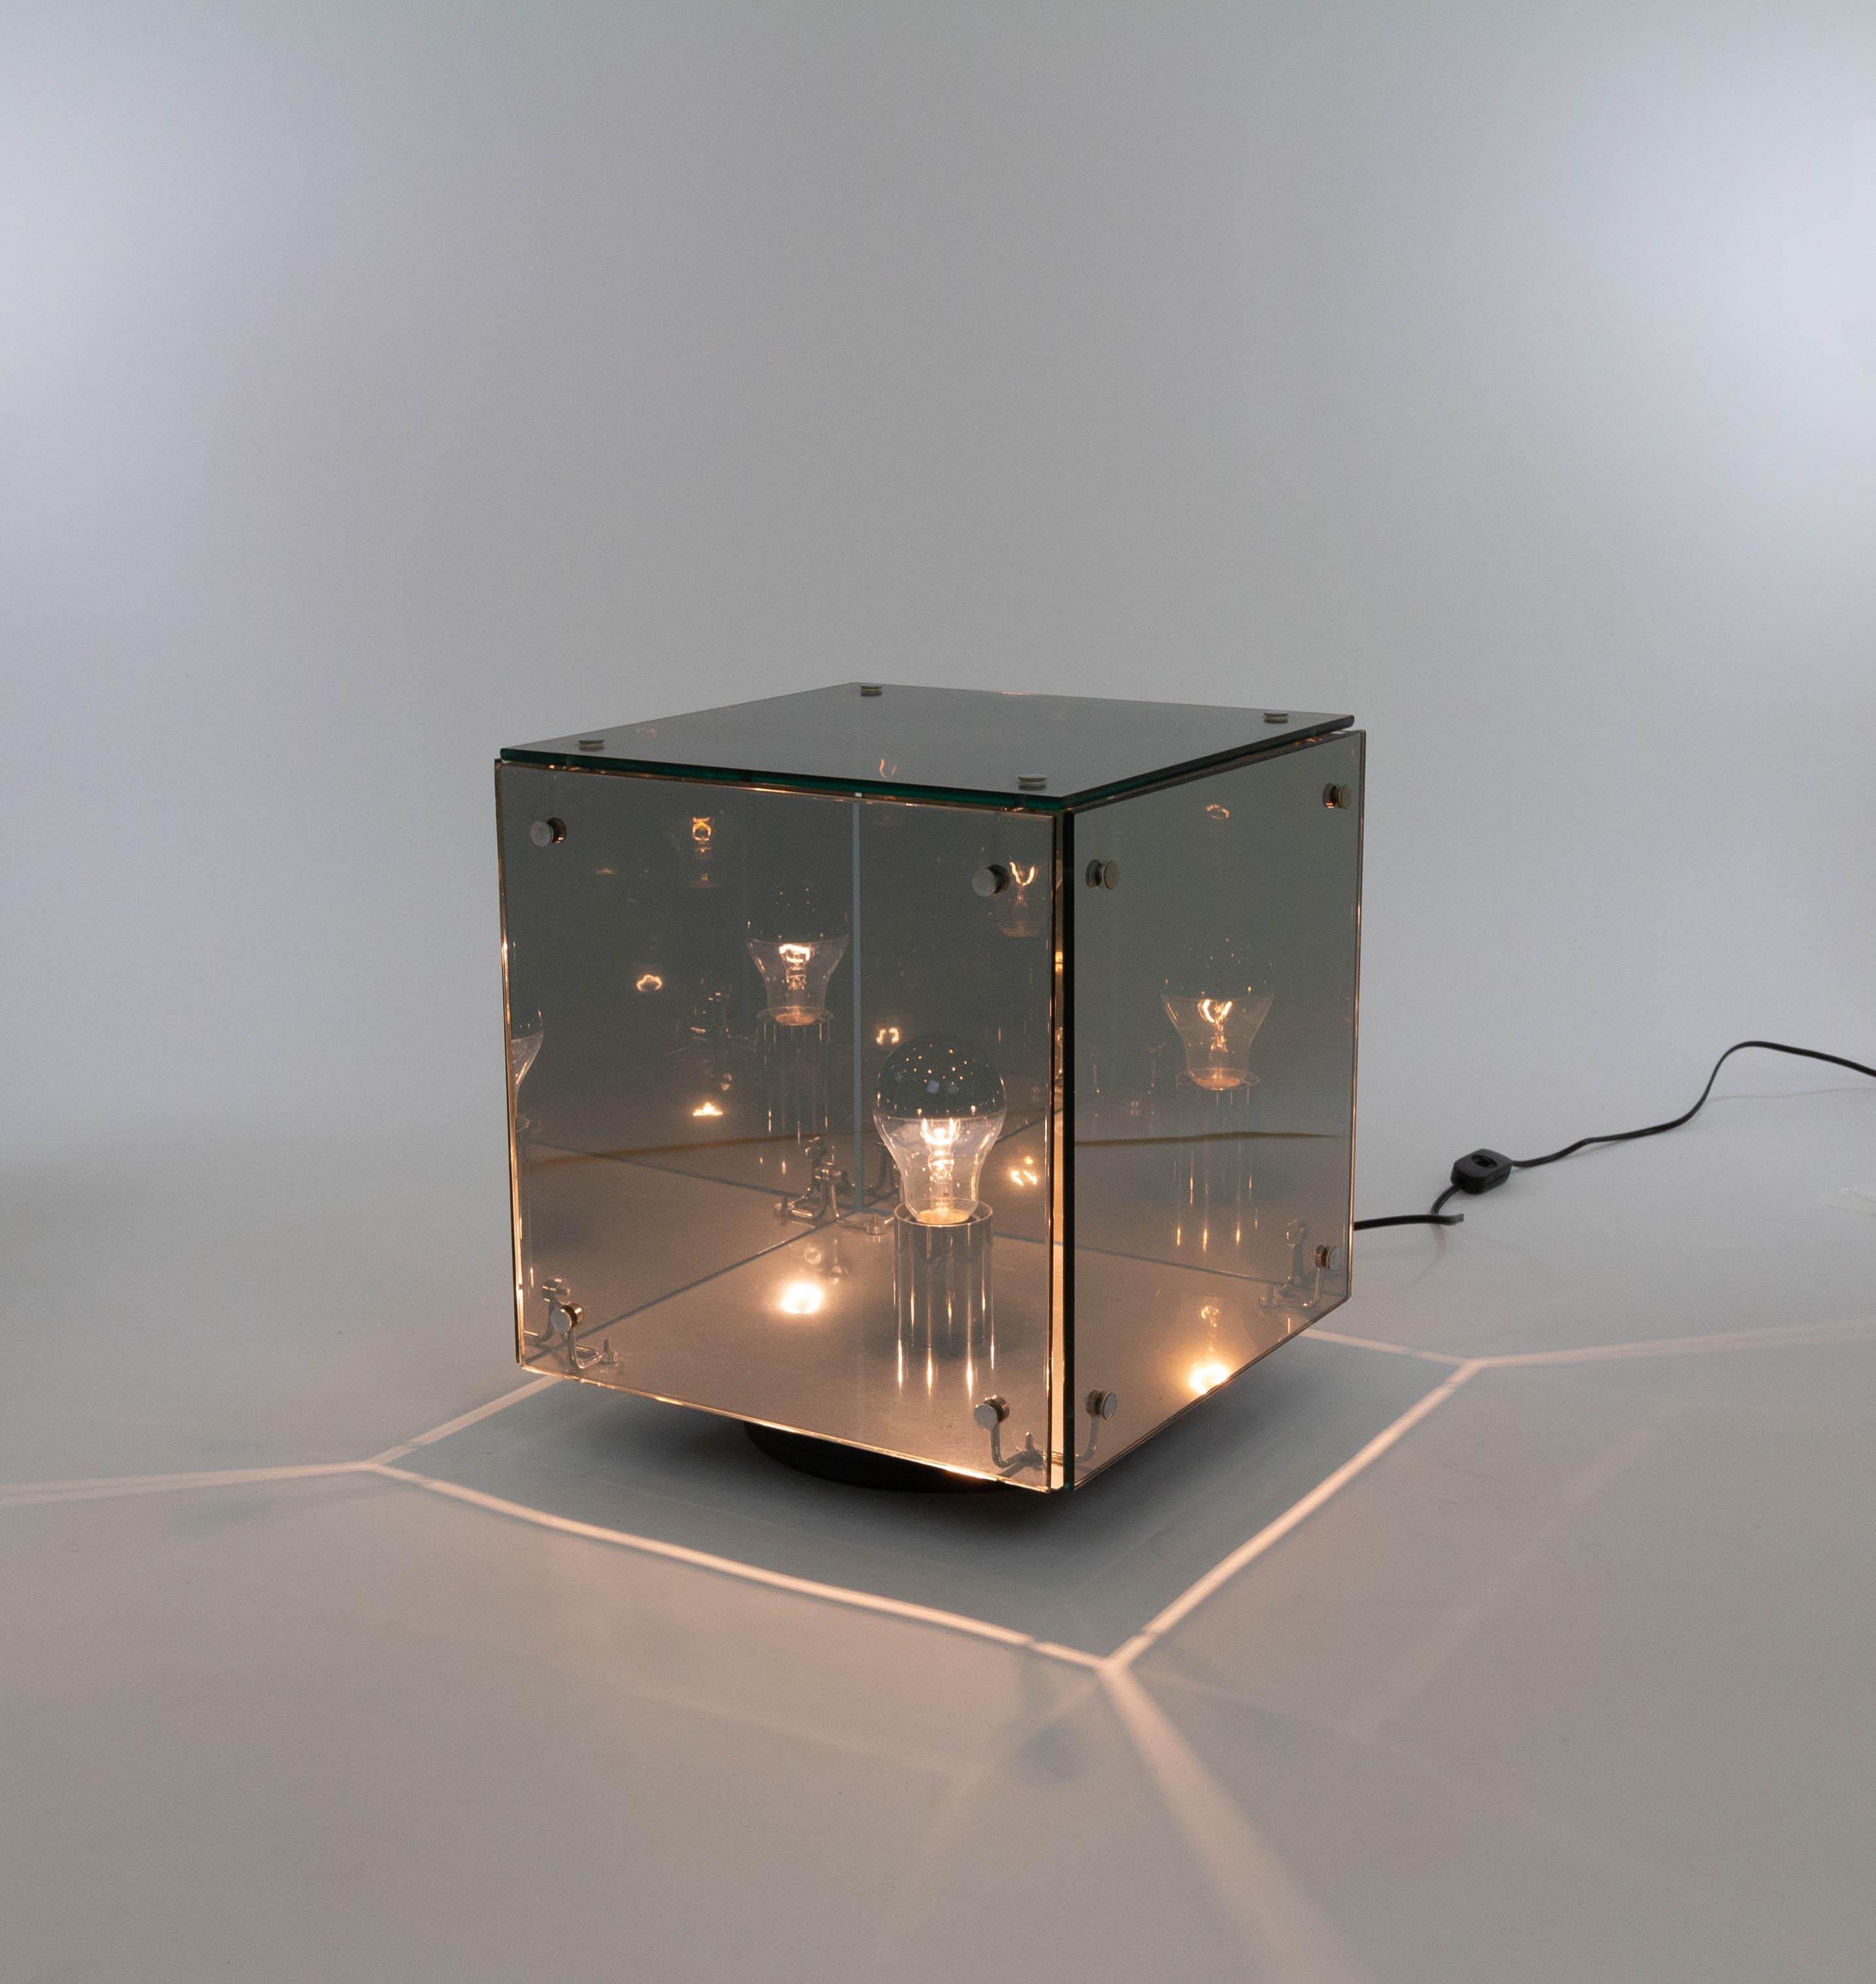 Lampe de table Prismar en forme de cube conçue par le Studio A.R.D.I.T.I. en 1972 et produite par Nucleo Sormani.

Cette lampe de table ou lampadaire se compose de 5 éléments gris fumé semblables à des miroirs, maintenus par des pièces chromées